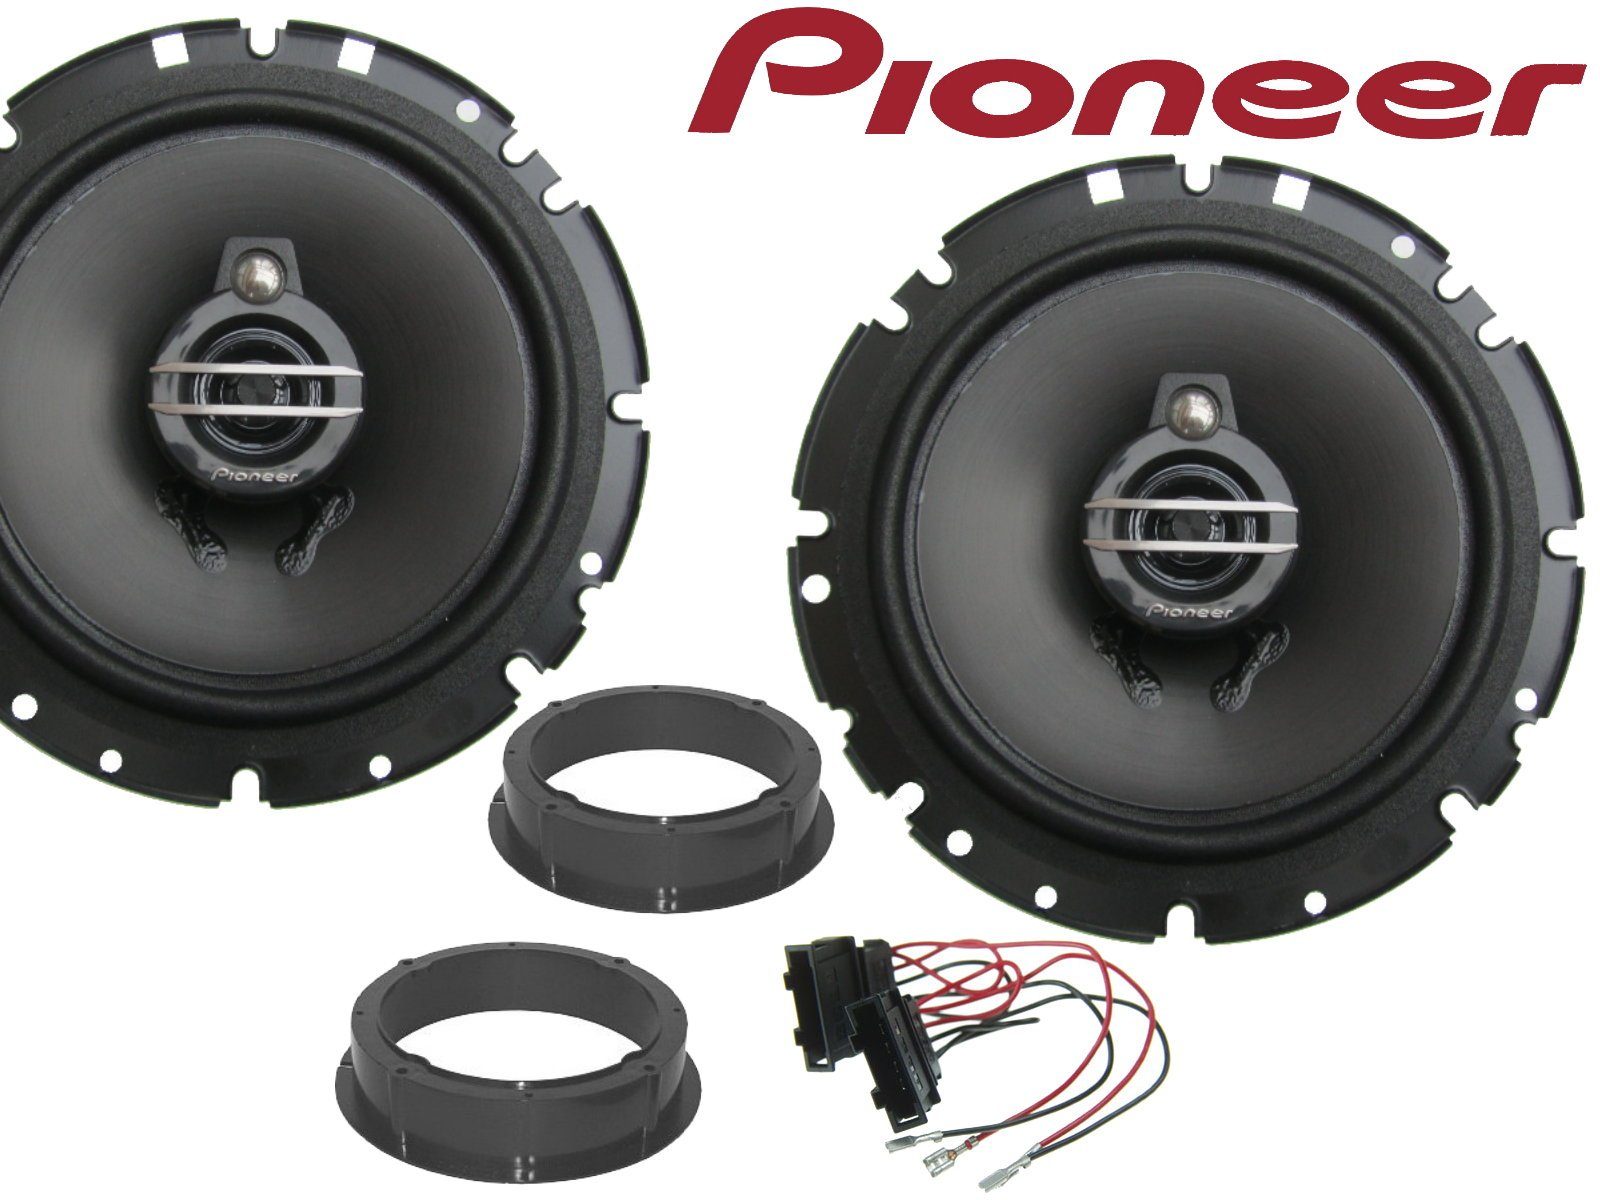 DSX Pioneer 3Wege passend für Skoda Roomster Bj 06-15 Auto-Lautsprecher (40 W)